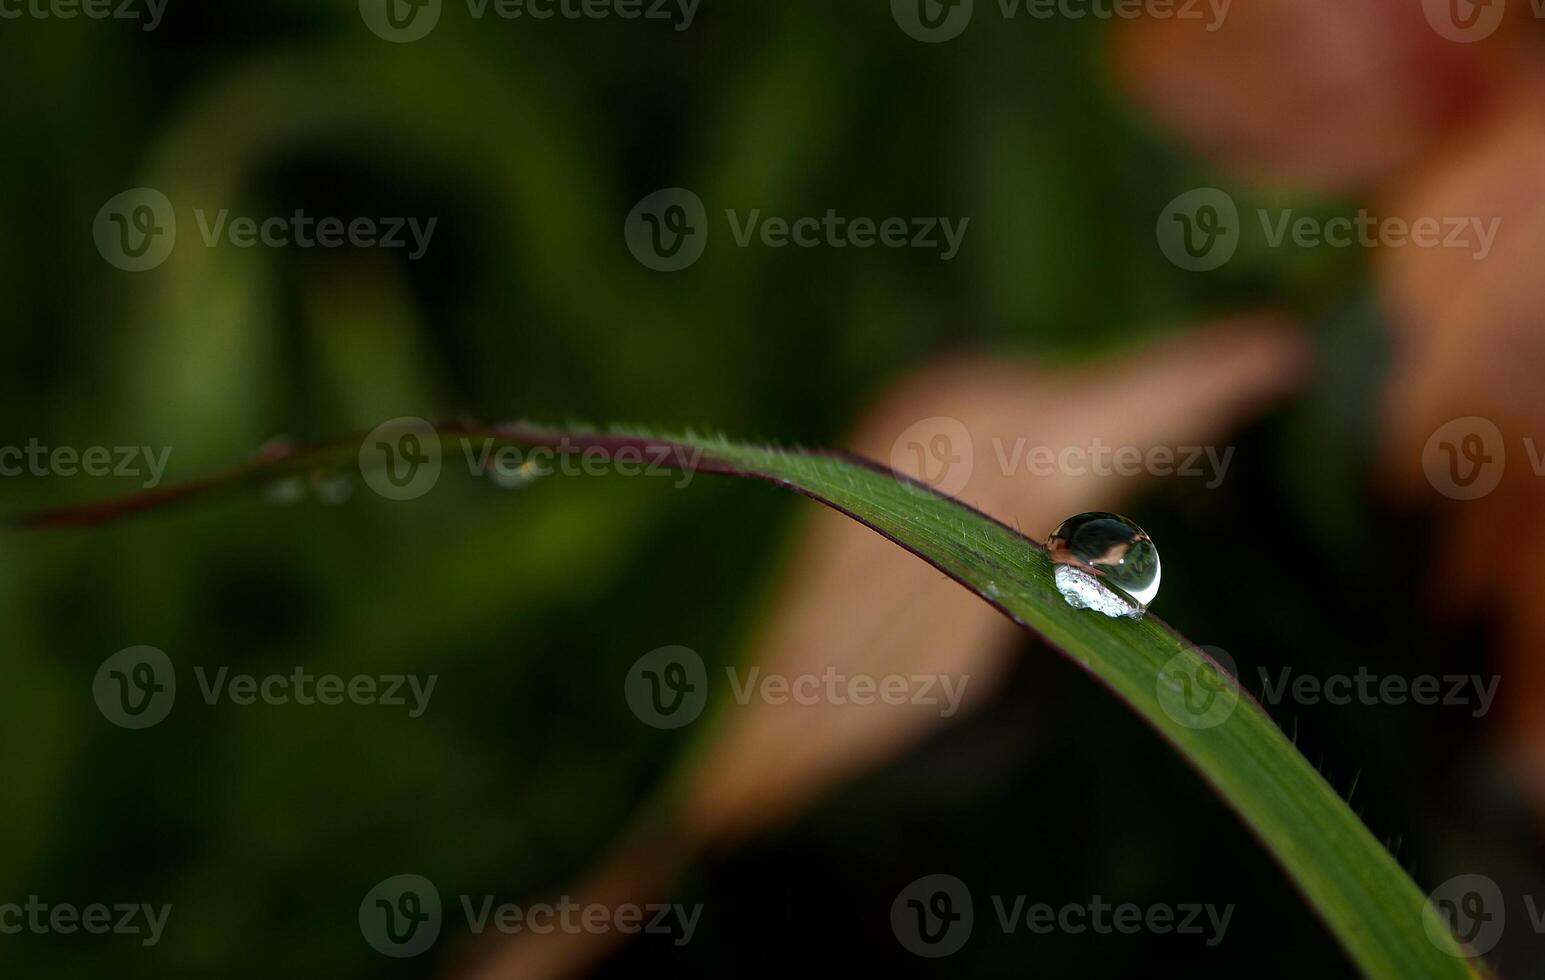 gota de orvalho em uma folha de grama foto